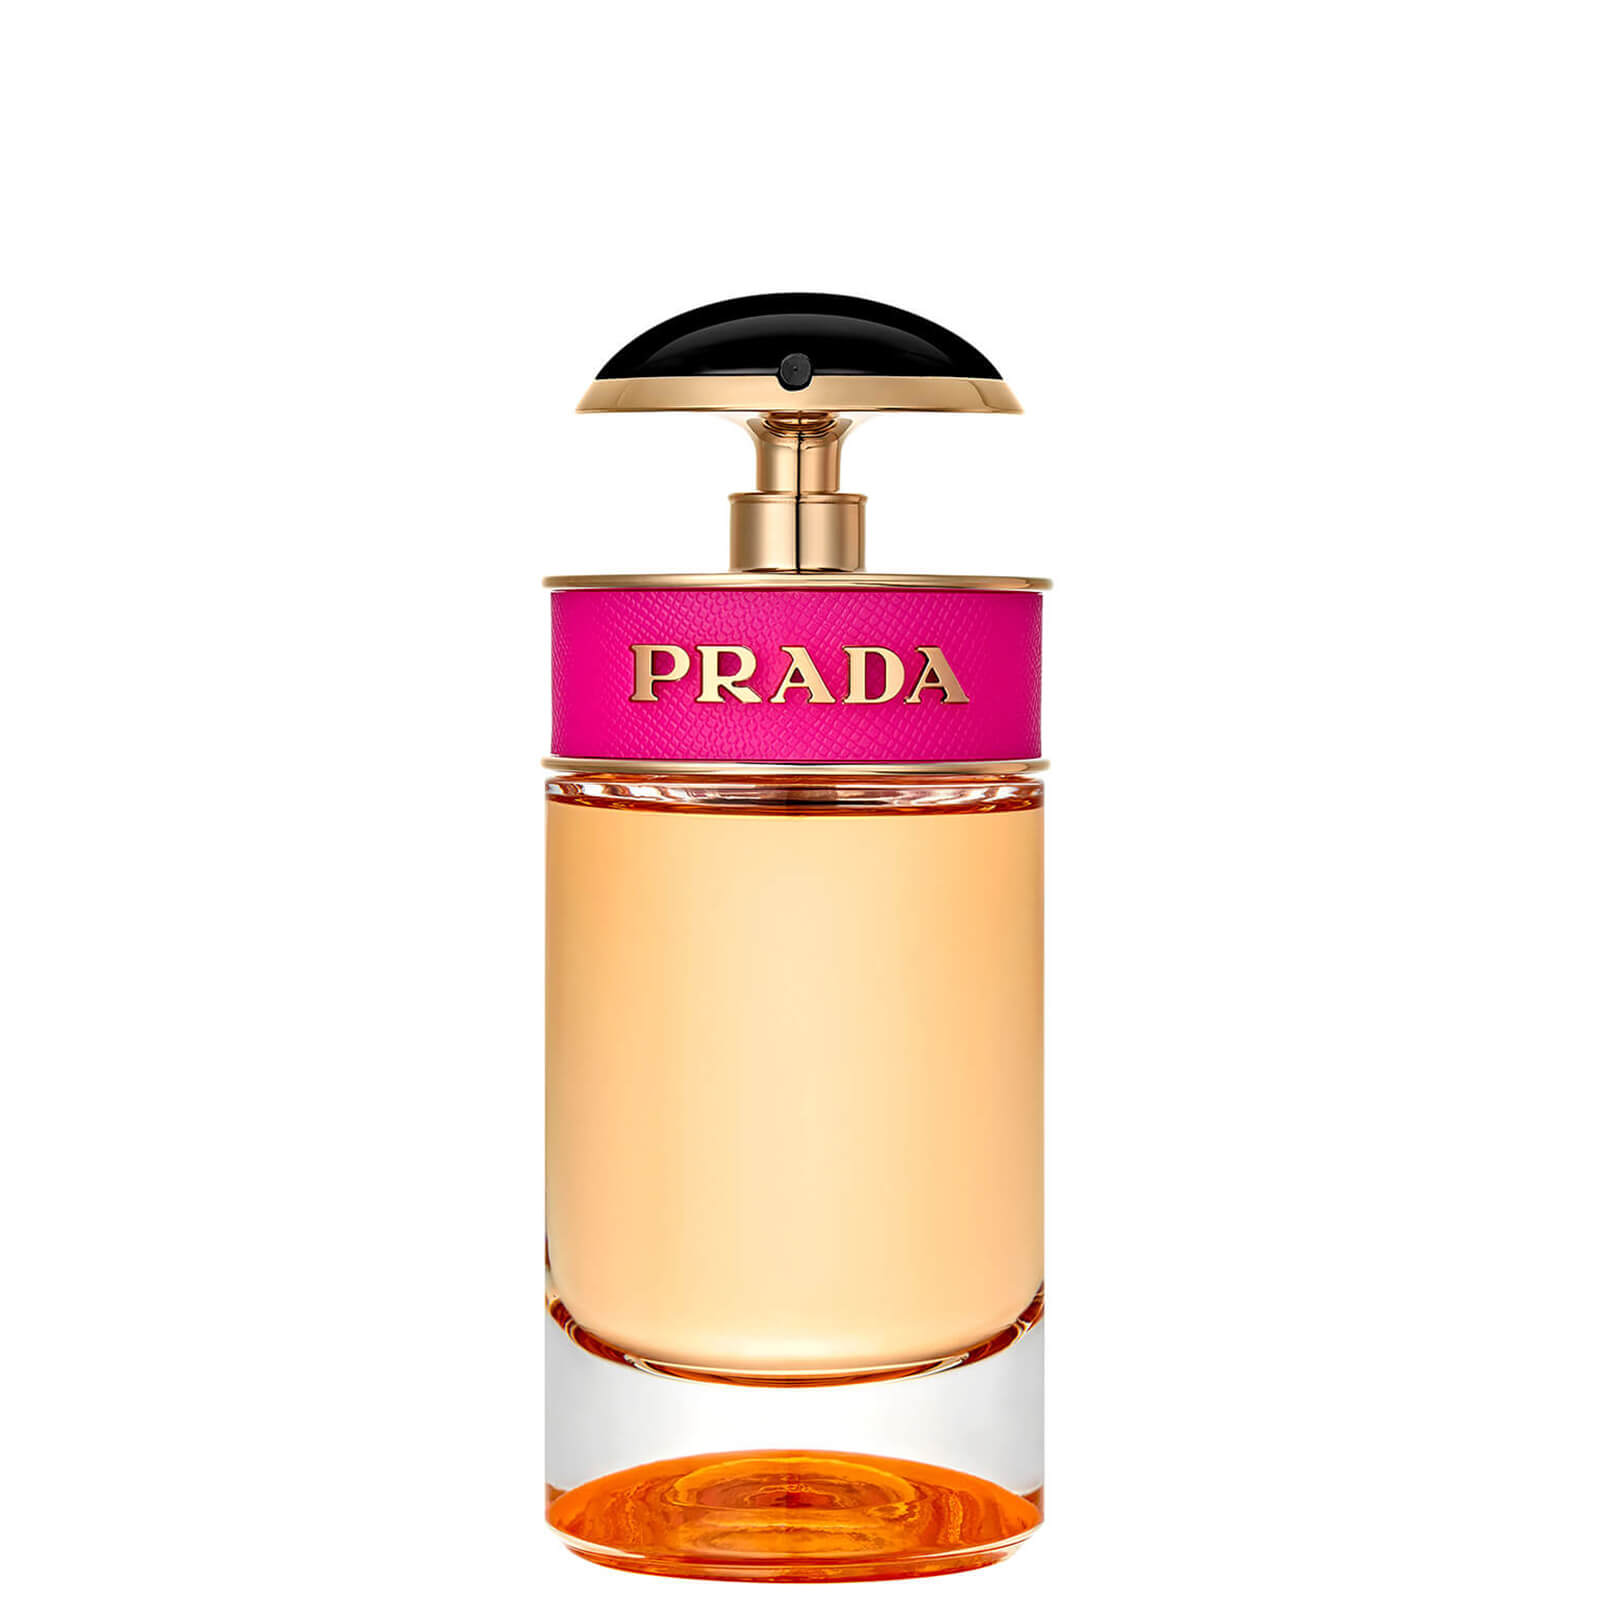 Prada Candy Eau de Parfum - 50ml product